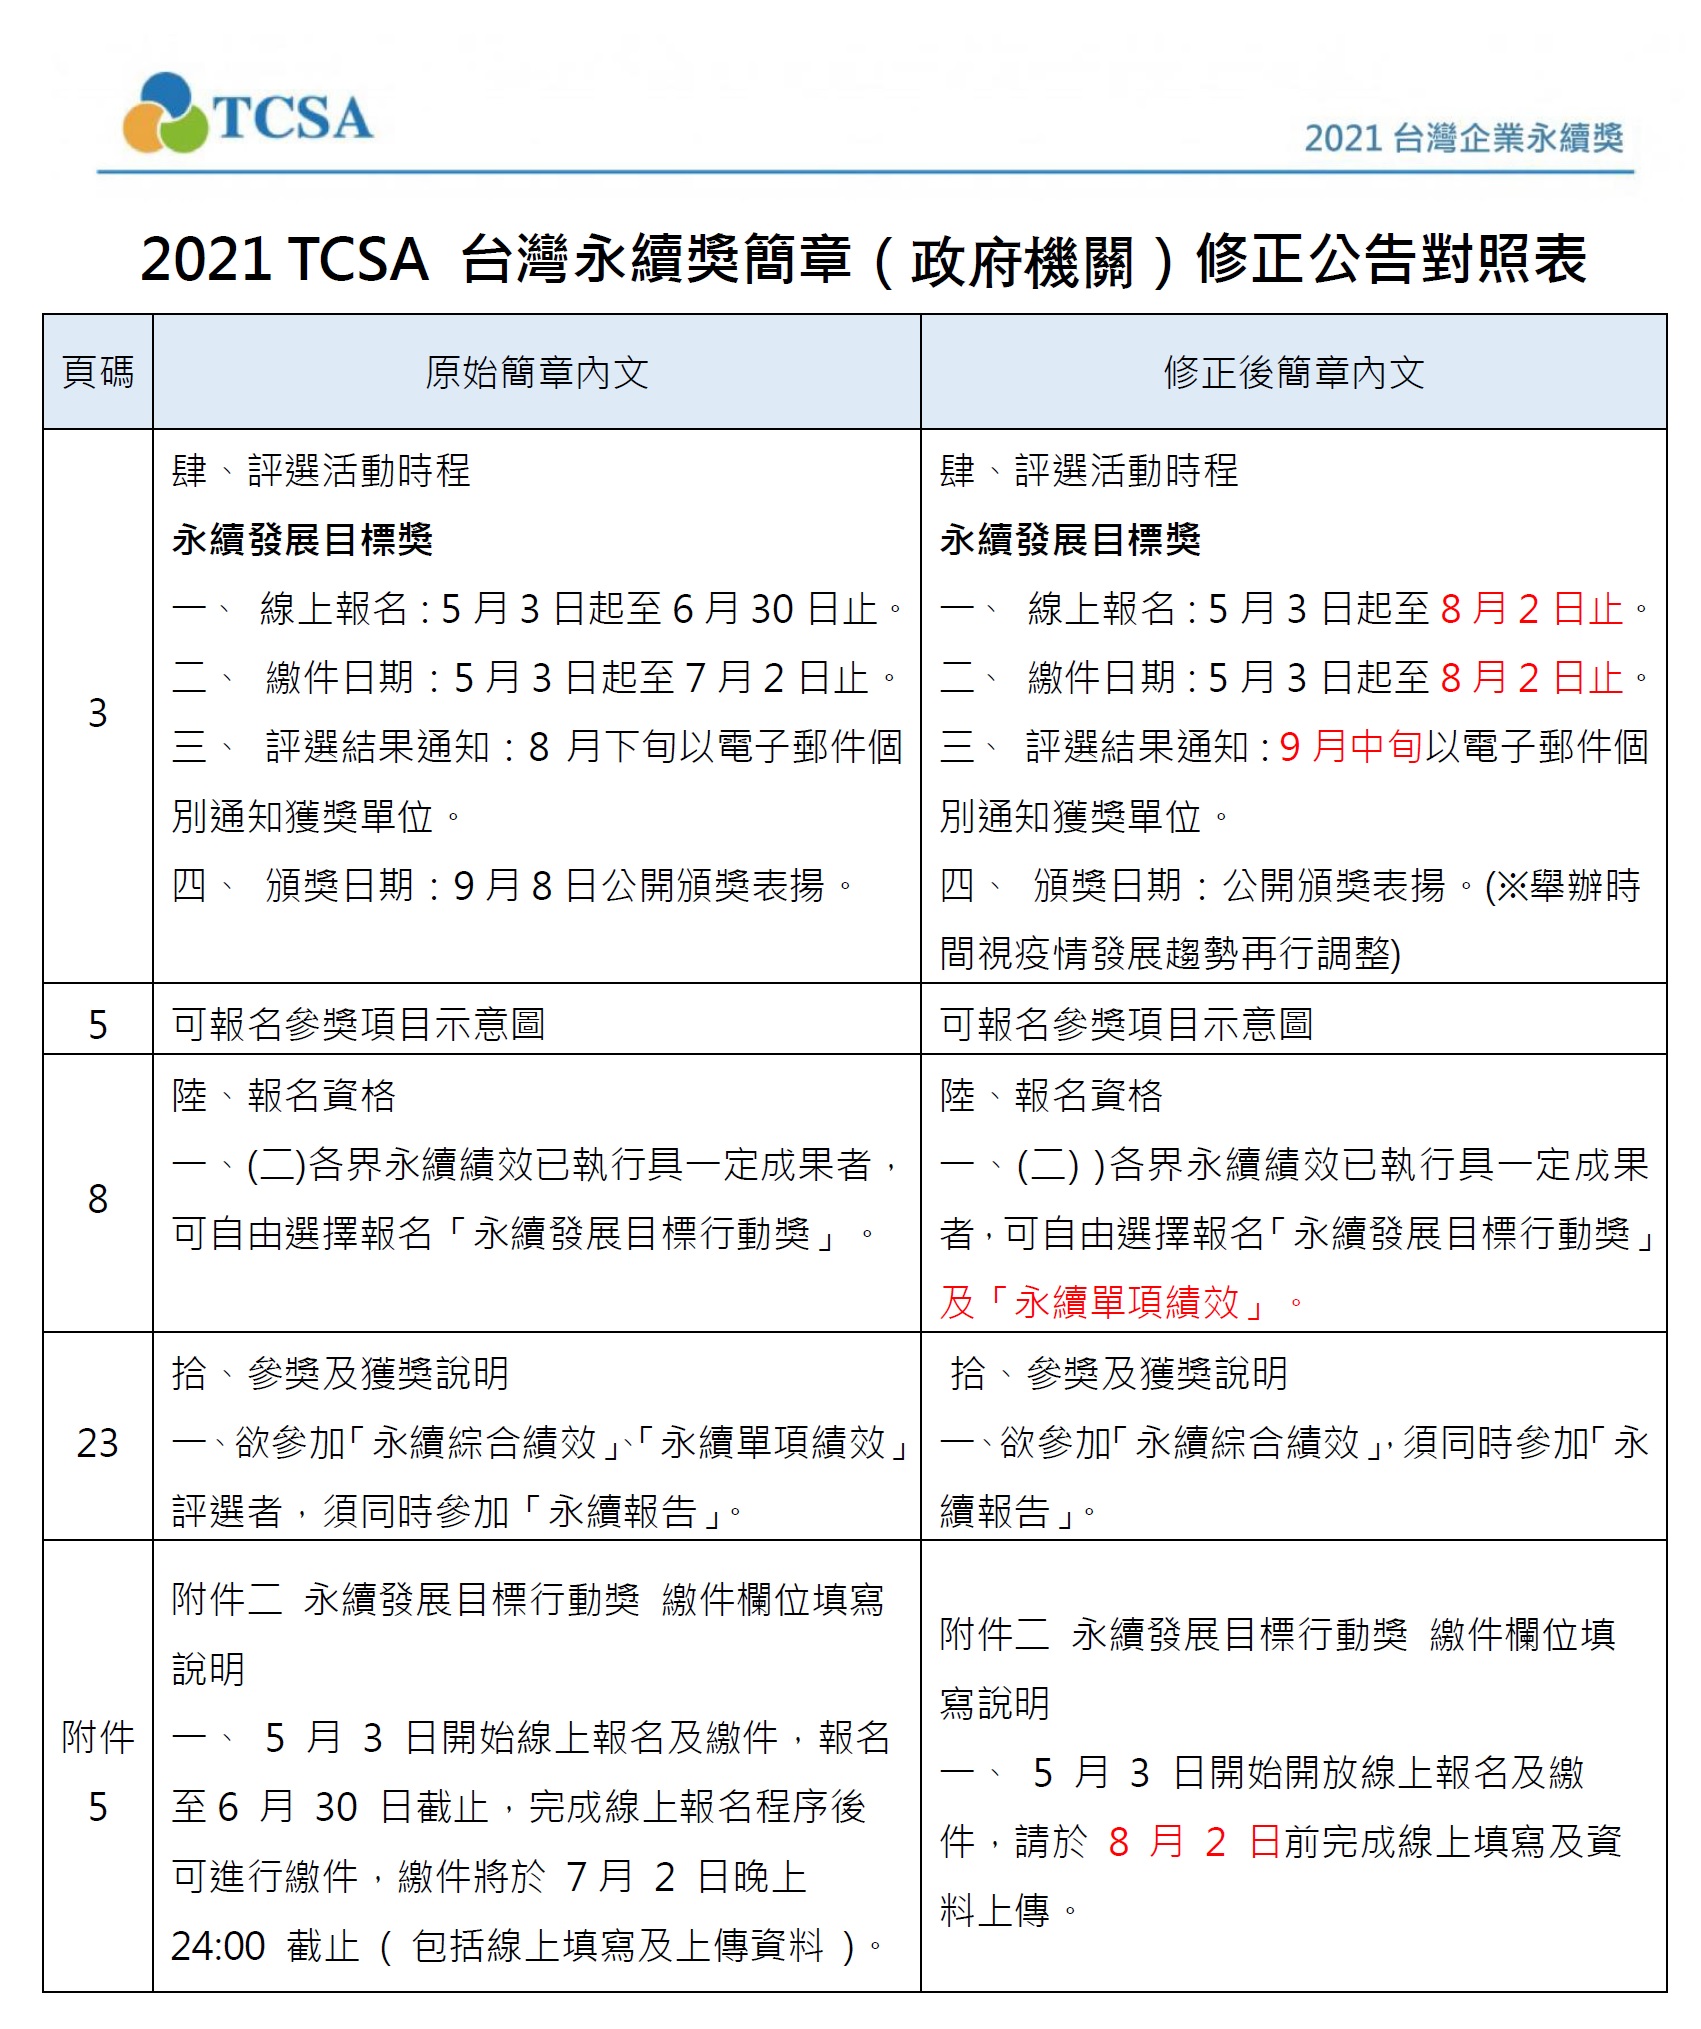 修正公告「2021第14屆台灣永續獎」評選活動